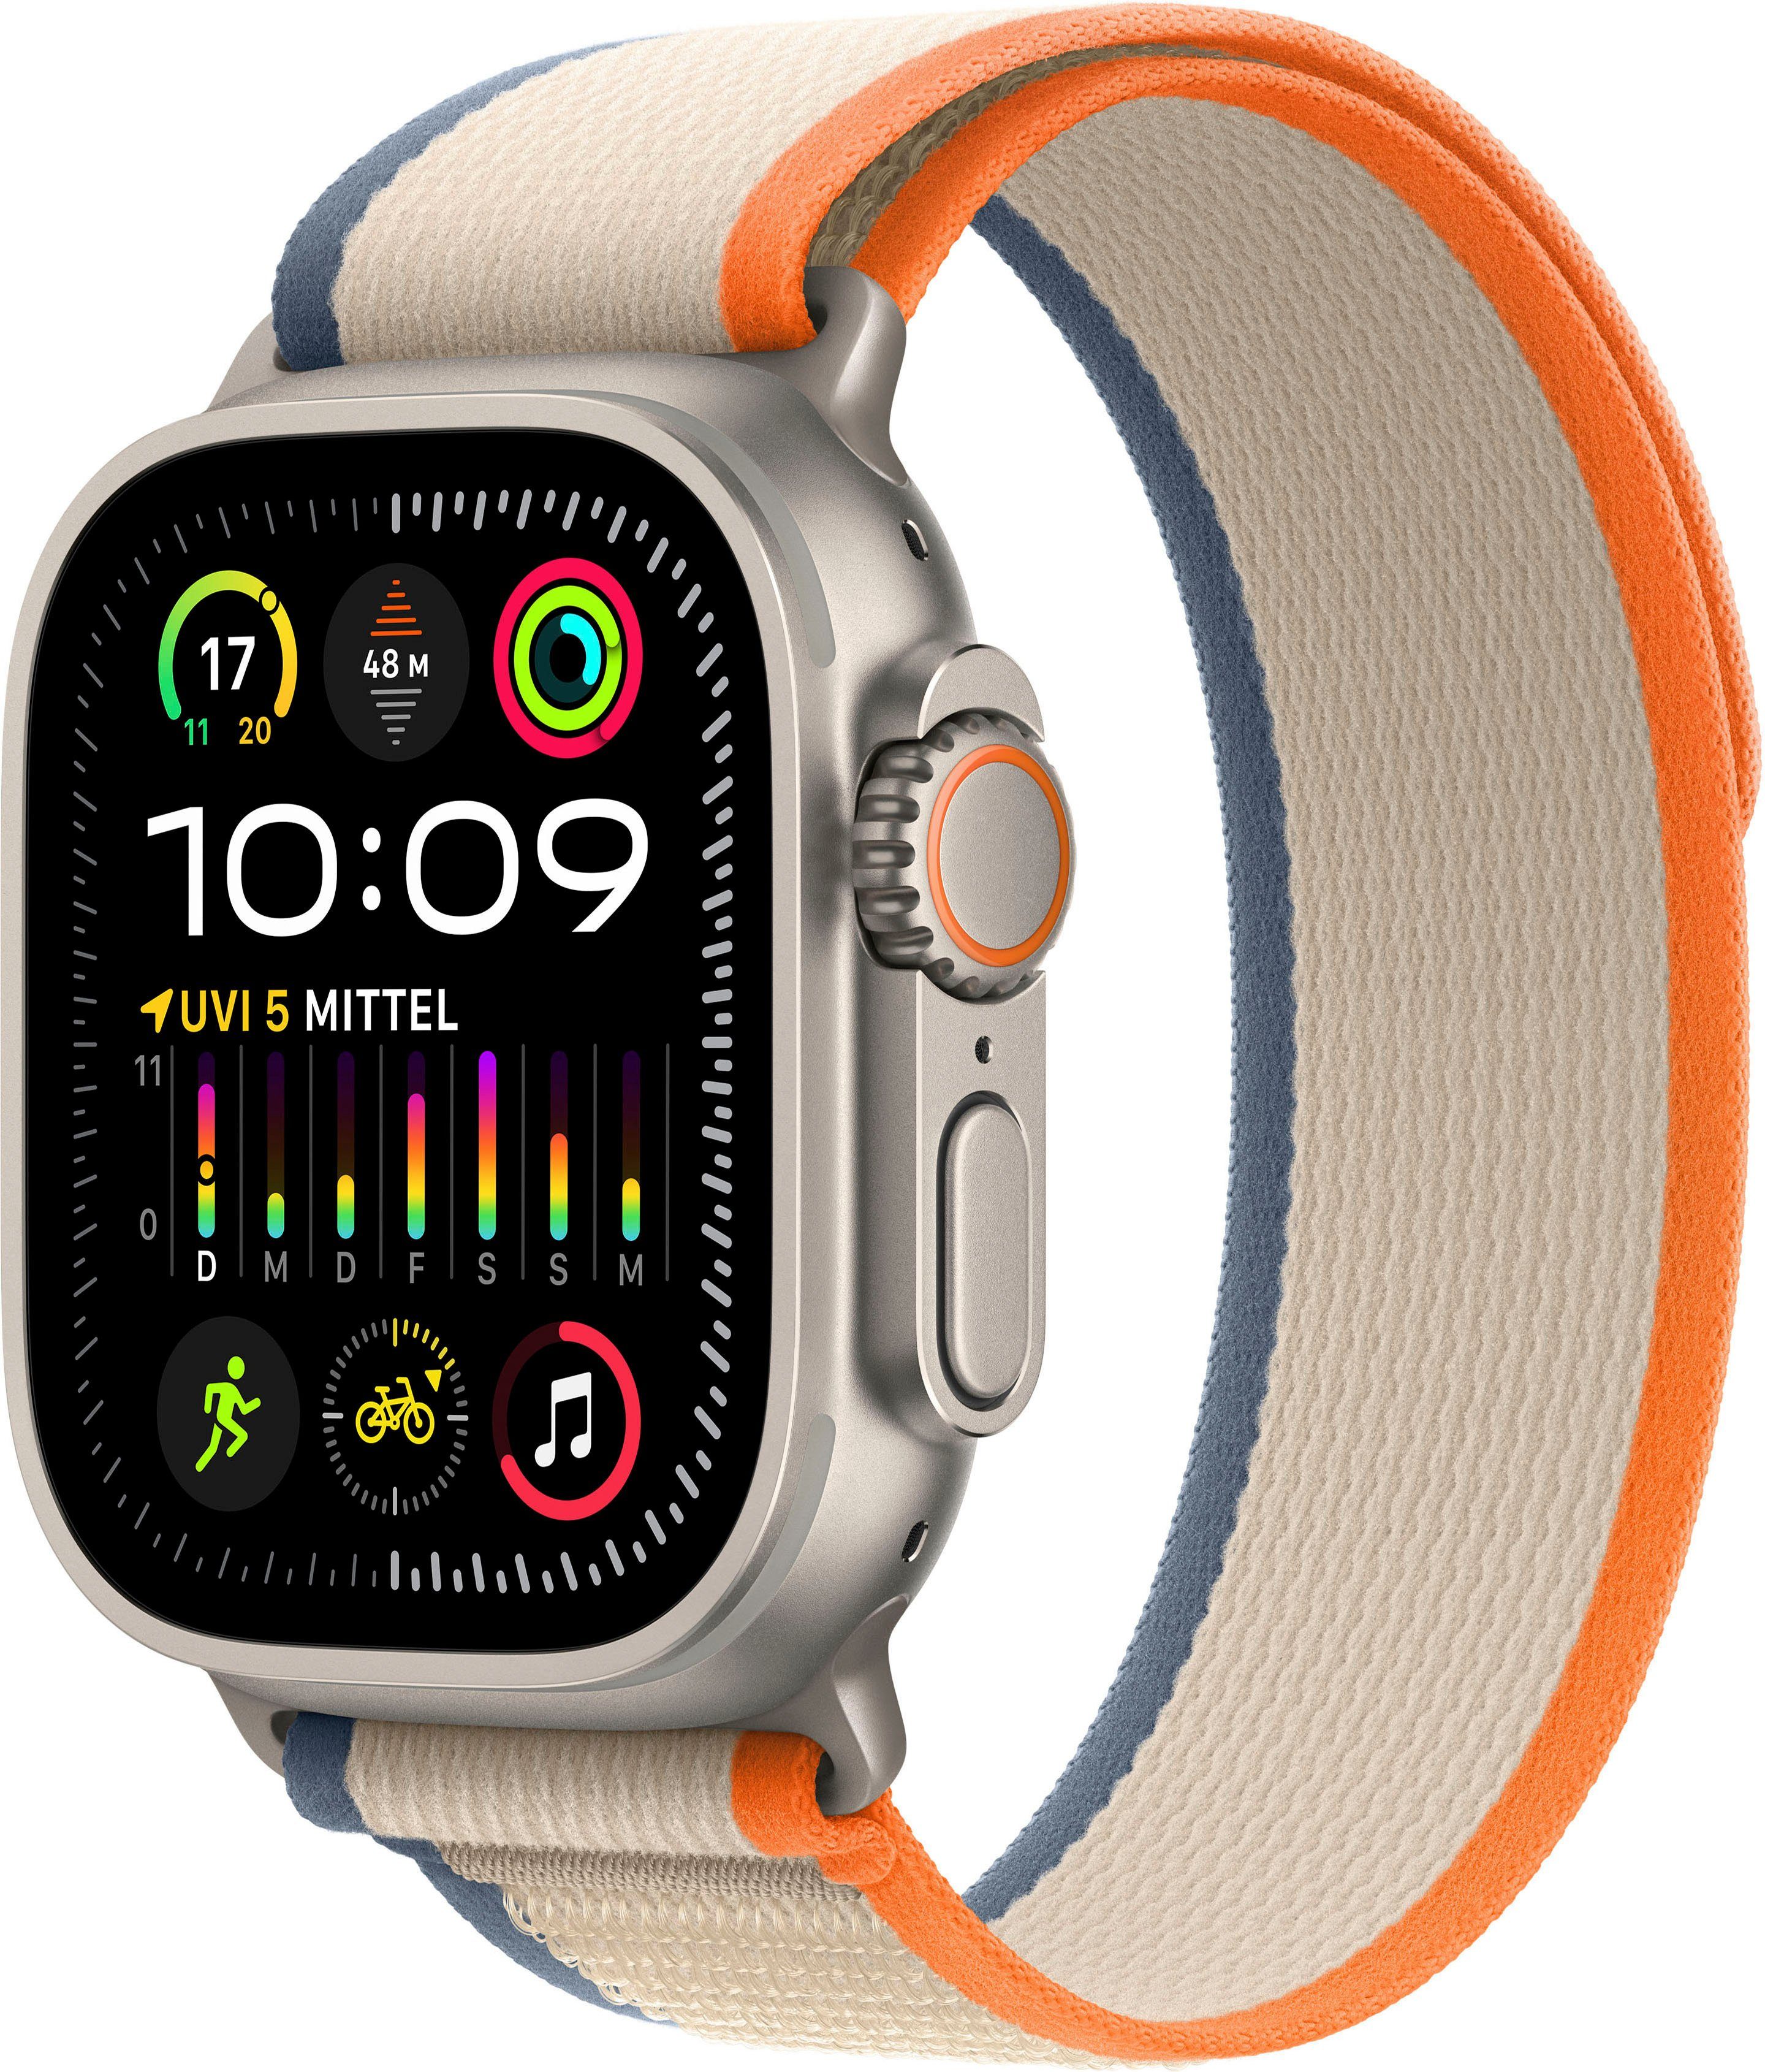 Apple Watch Ultra 2 im Test: Wenn der Preis keine Rolle spielt - Macwelt